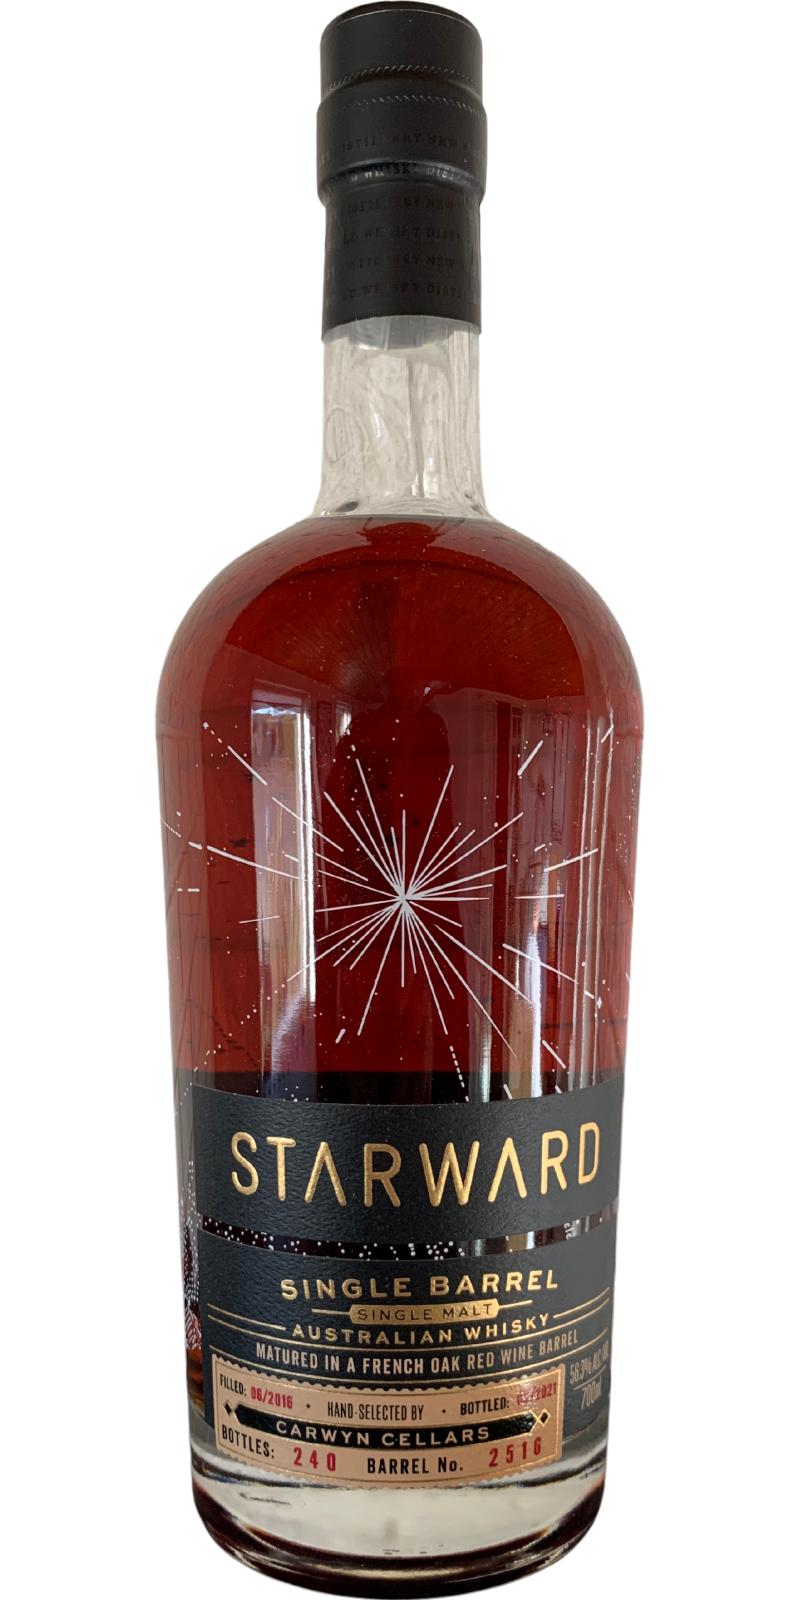 Starward 2016 French Oak Red Wine Barrel Carwyn Cellars 56.3% 700ml